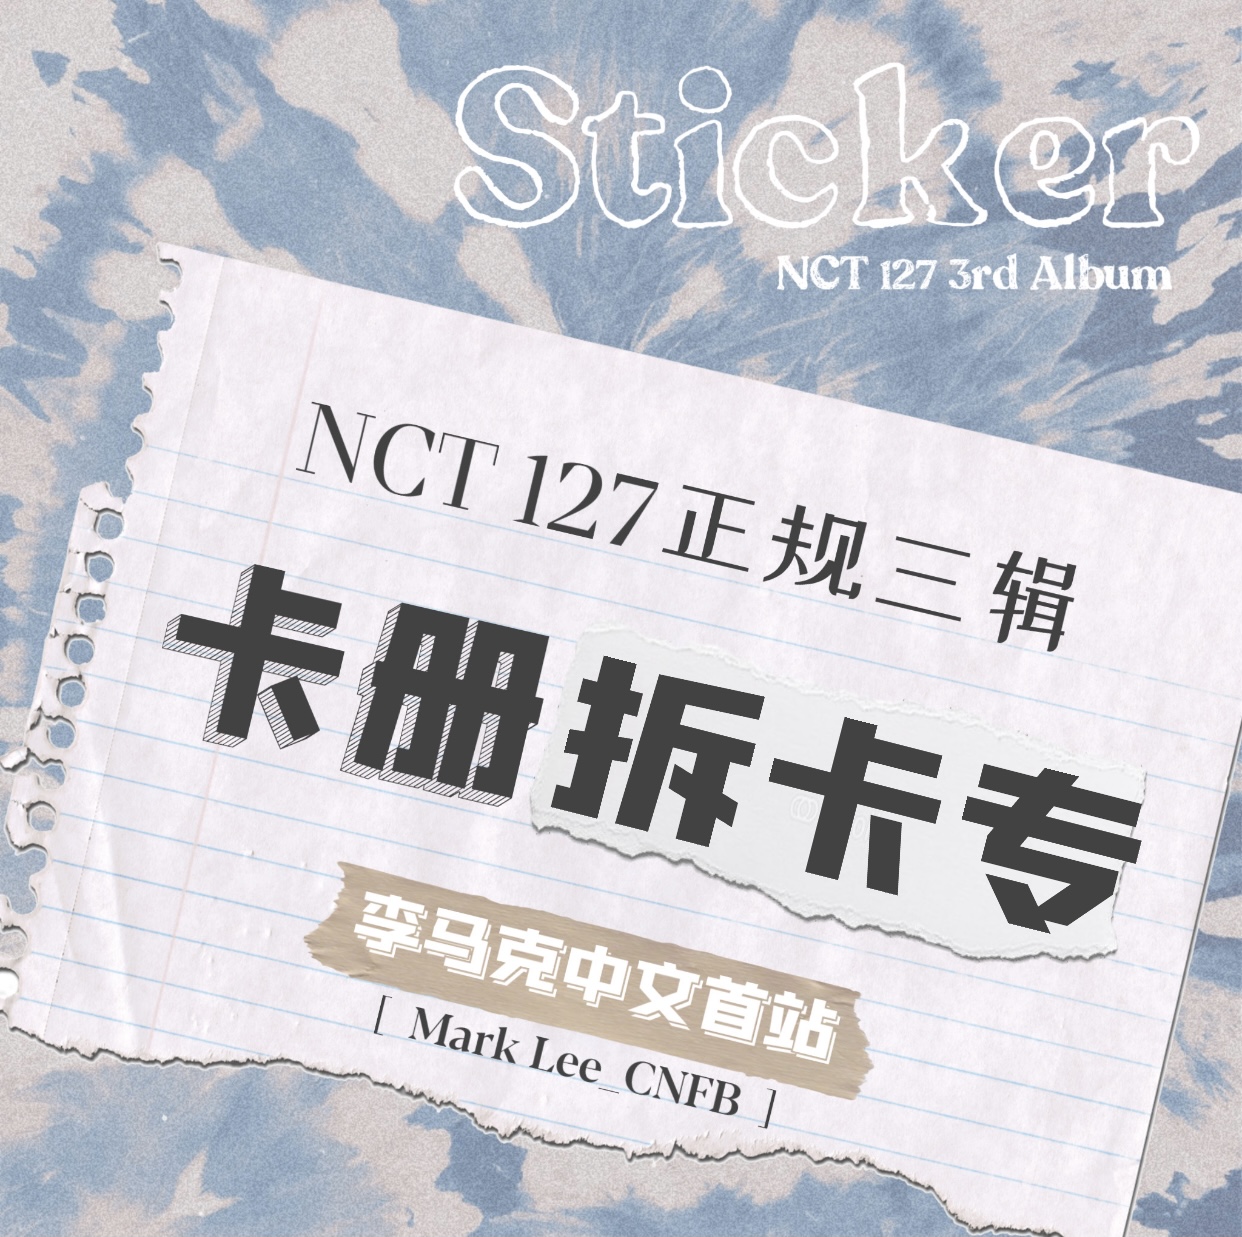 [拆卡专 卡册拆卡] NCT 127 - 正规3辑 [Sticker] (Sticker Ver.) 李马克中文首站